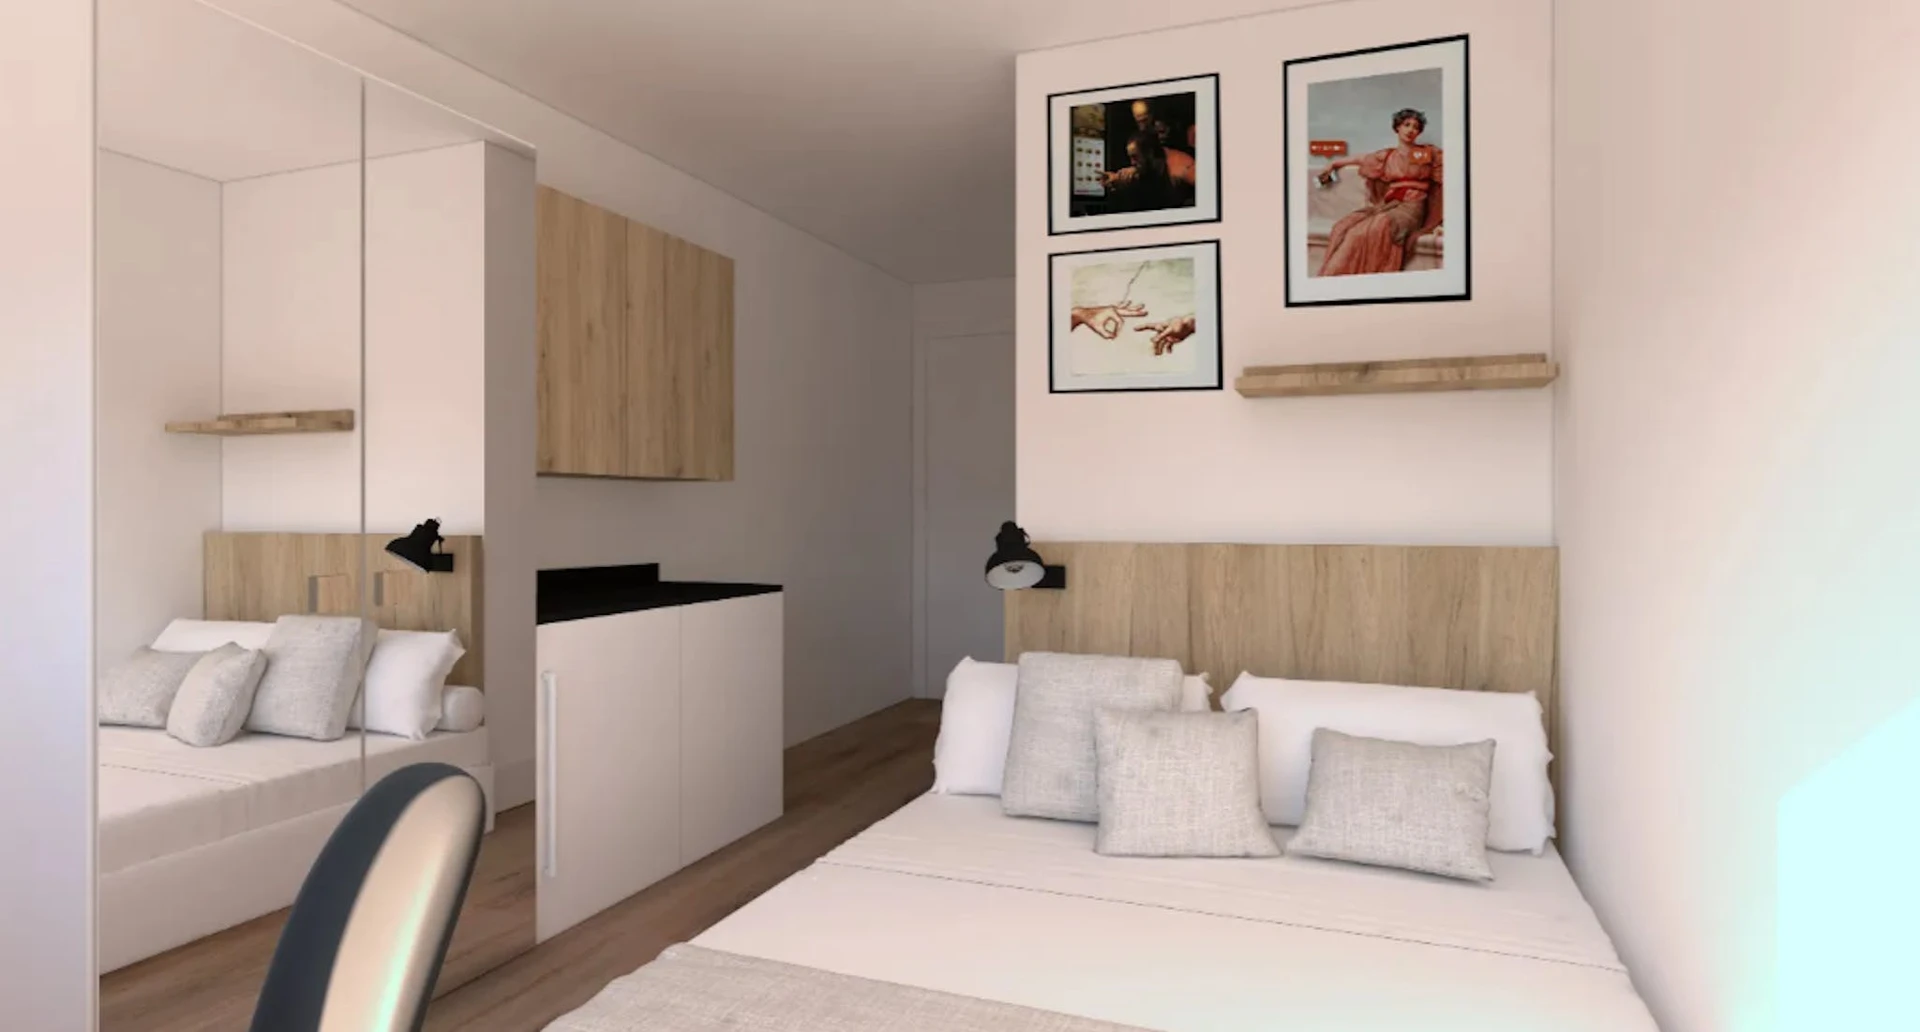 Zimmer mit Doppelbett zu vermieten Segovia